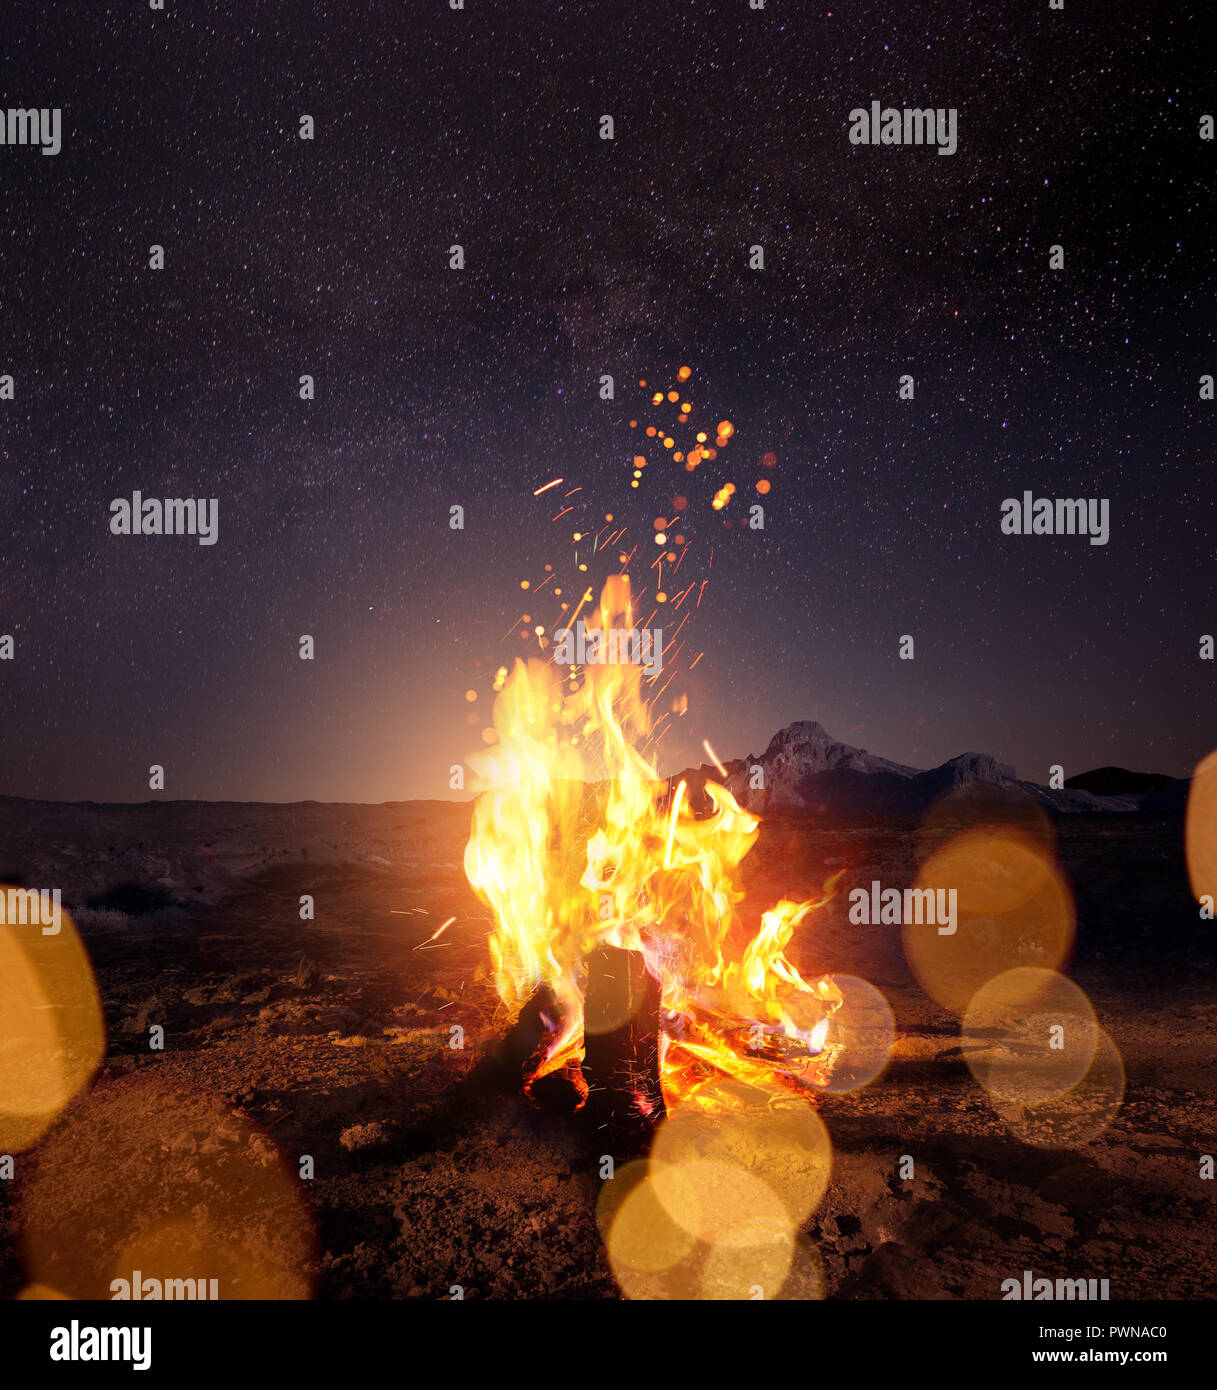 Beobachten der Sterne um einen leuchtenden warmen Lagerfeuer in der Nacht. Foto Composite. Stockfoto